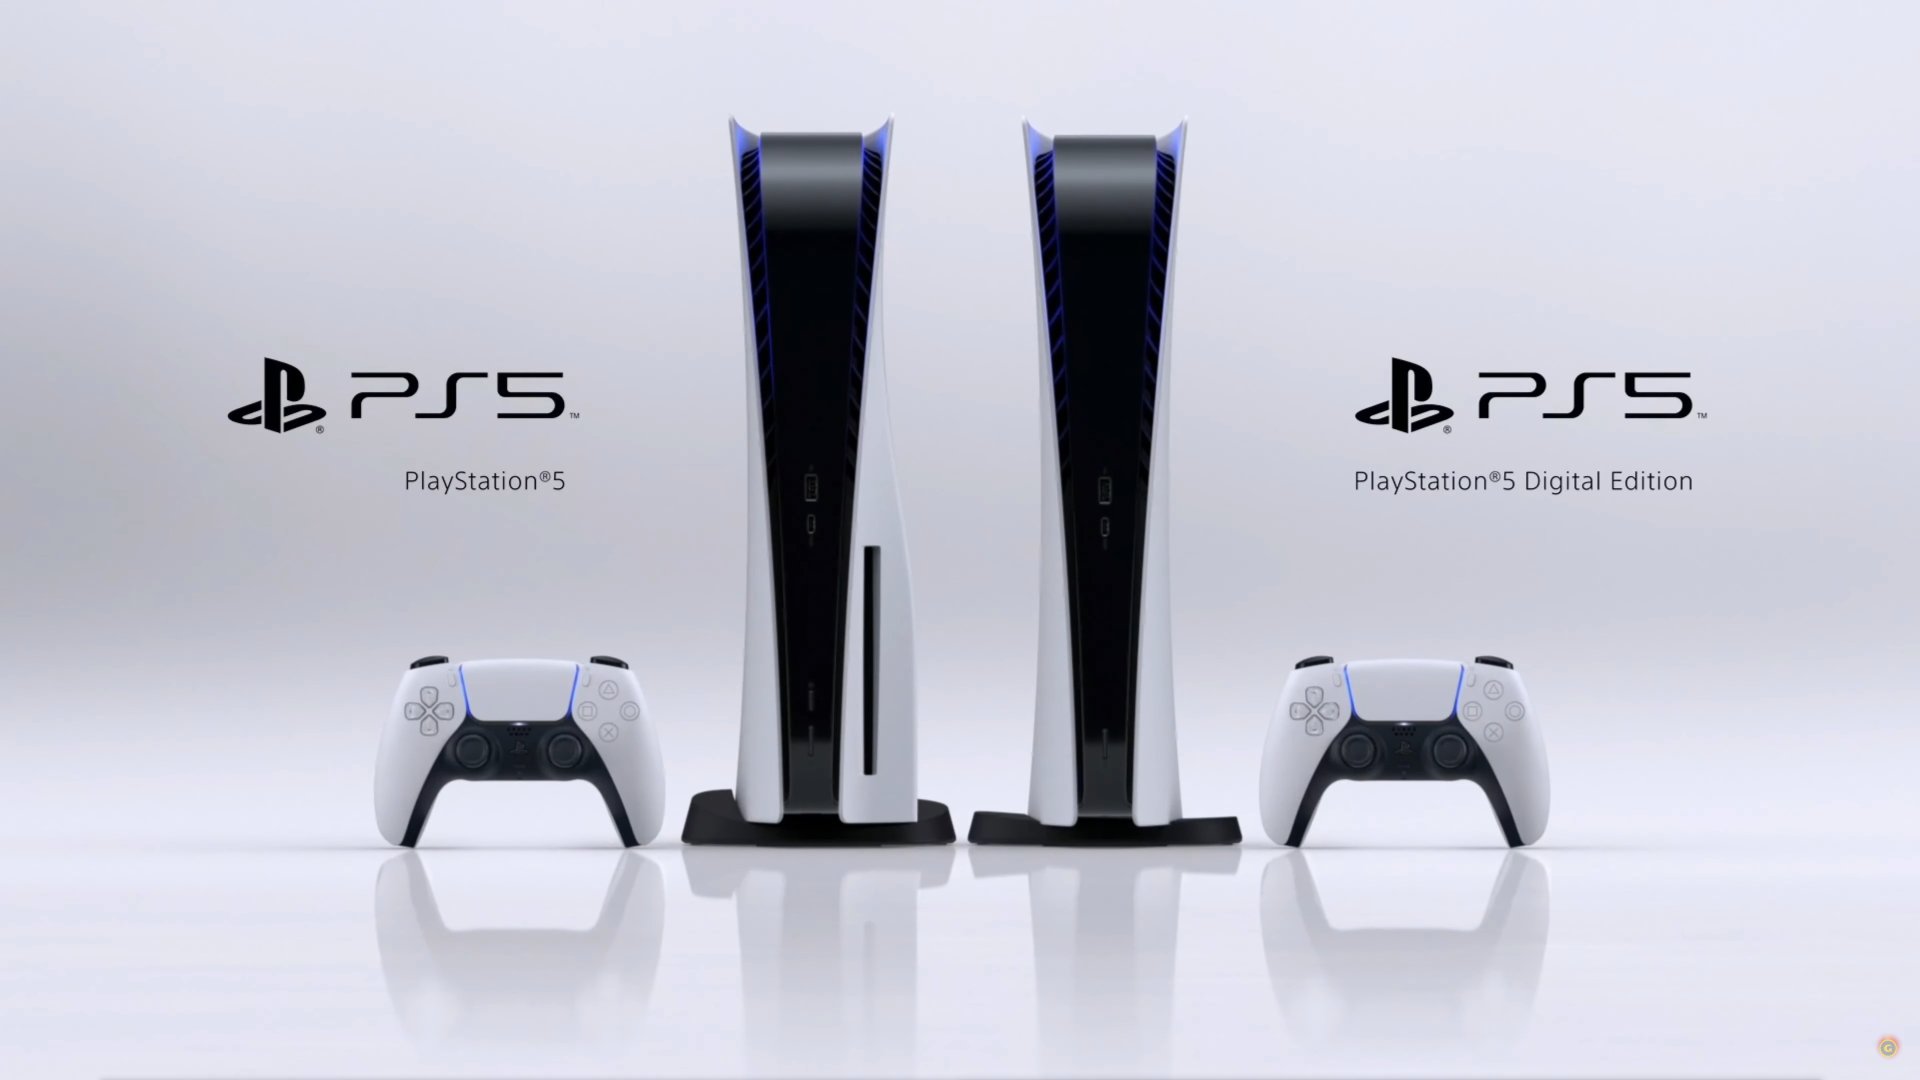 PS5 desbancou PS4 e foi o segundo console mais vendido no Reino Unido em 2020